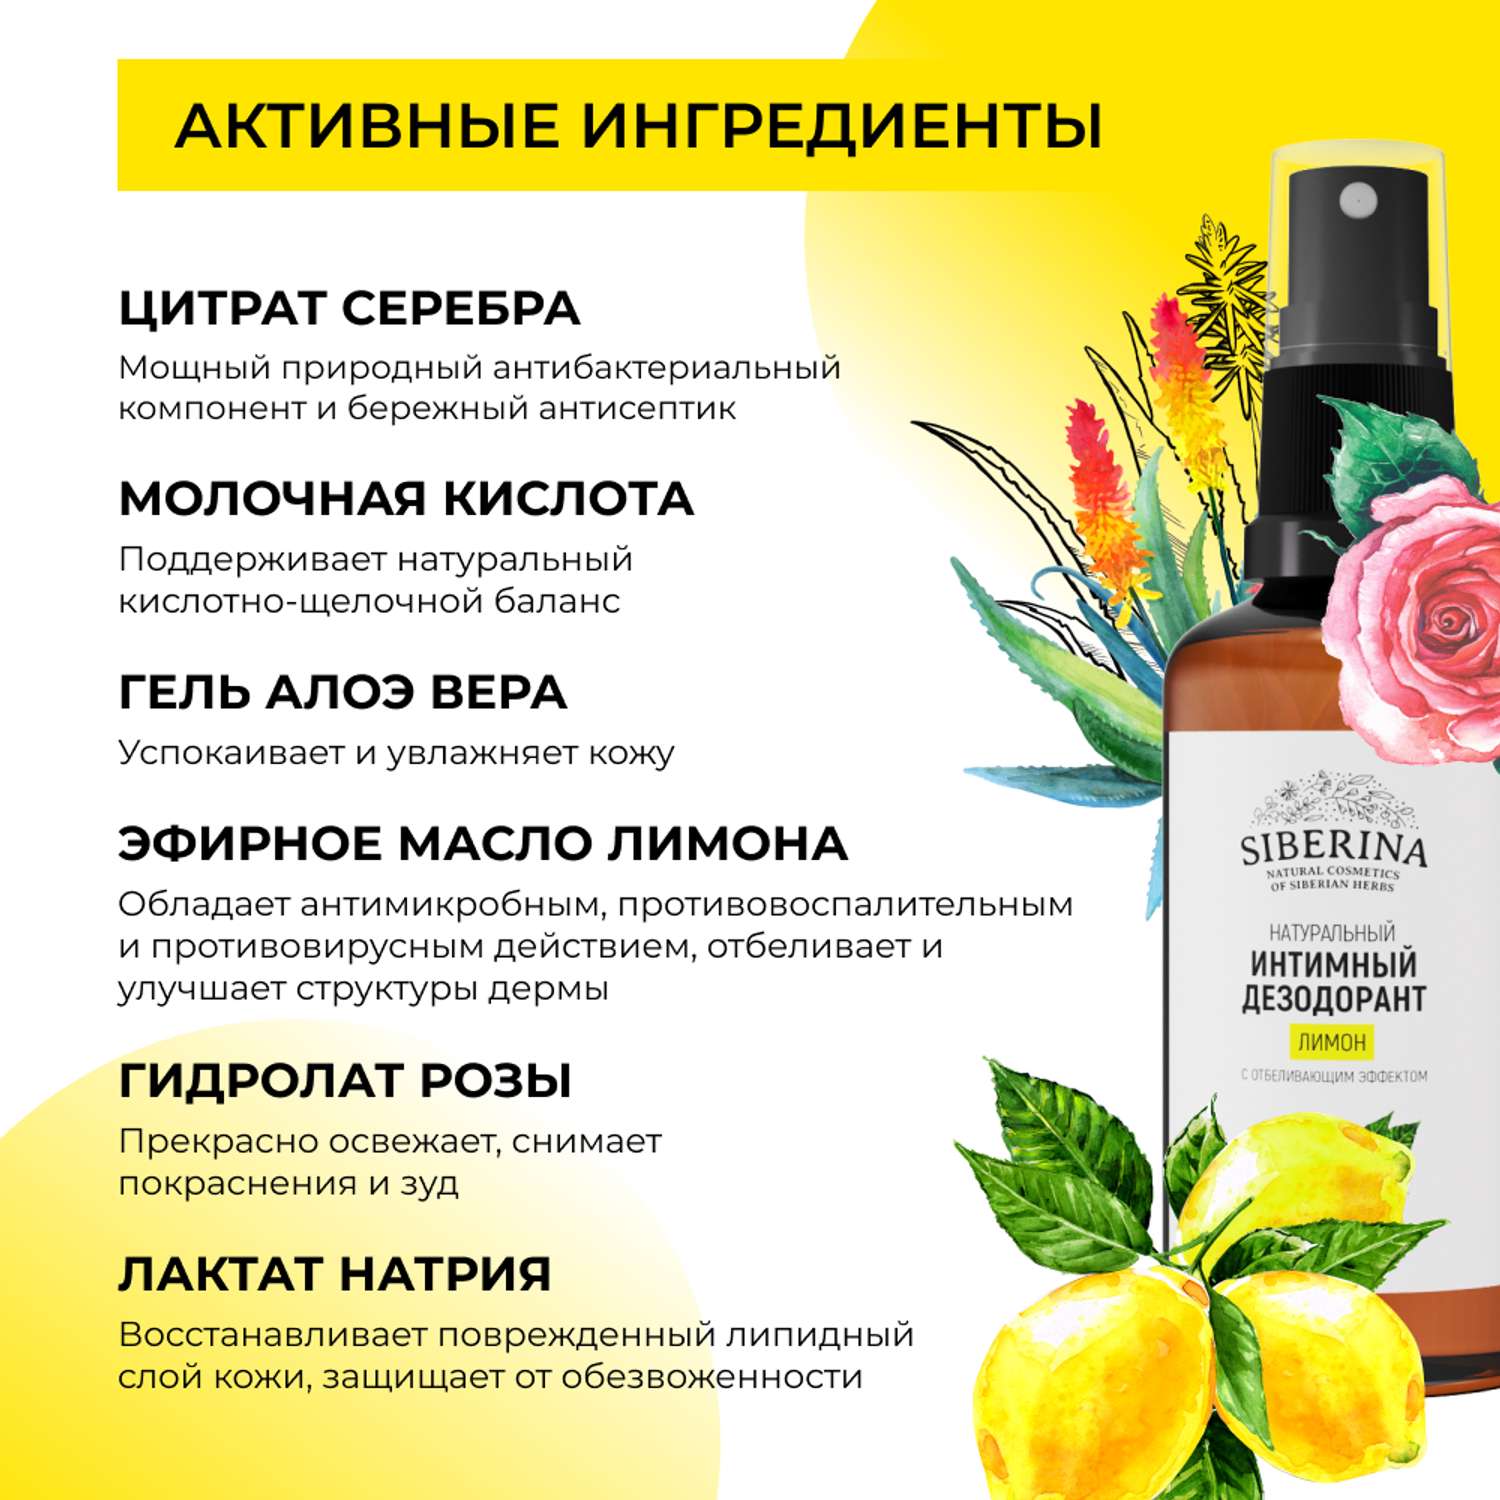 Интимный дезодорант Siberina натуральный «Лимон» с отбеливающим эффектом 50 мл - фото 4